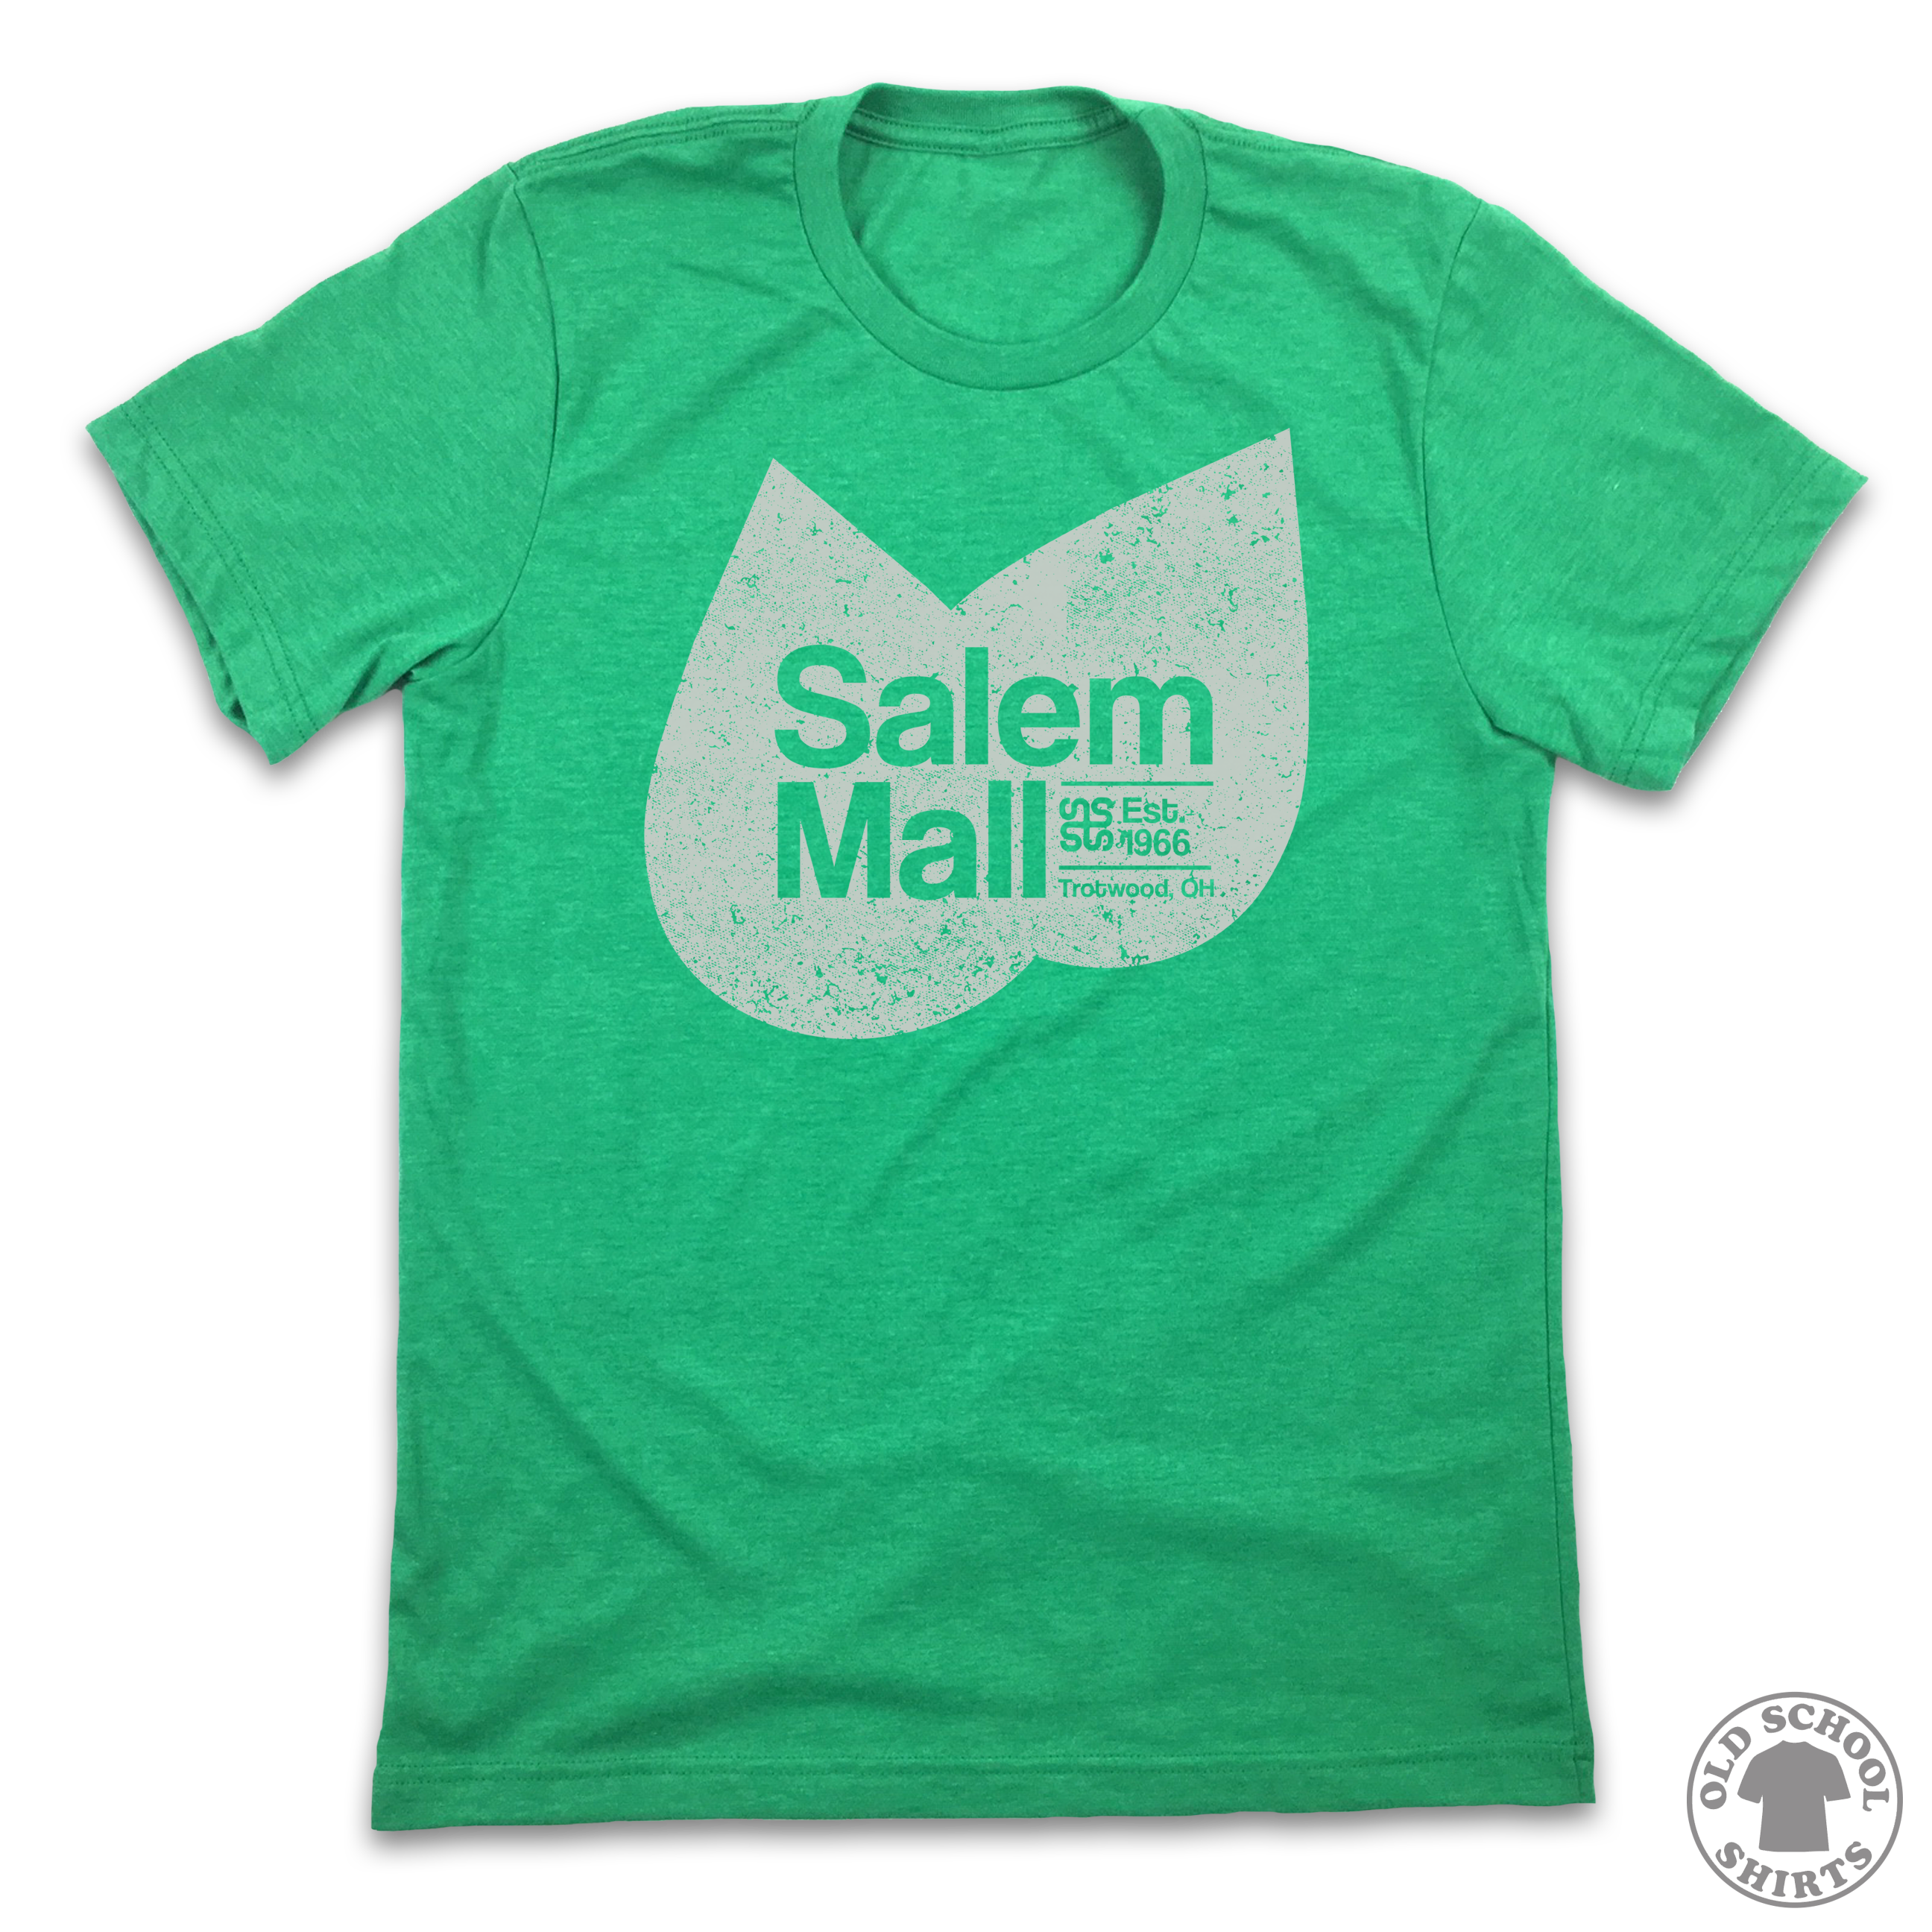 Salem Mall